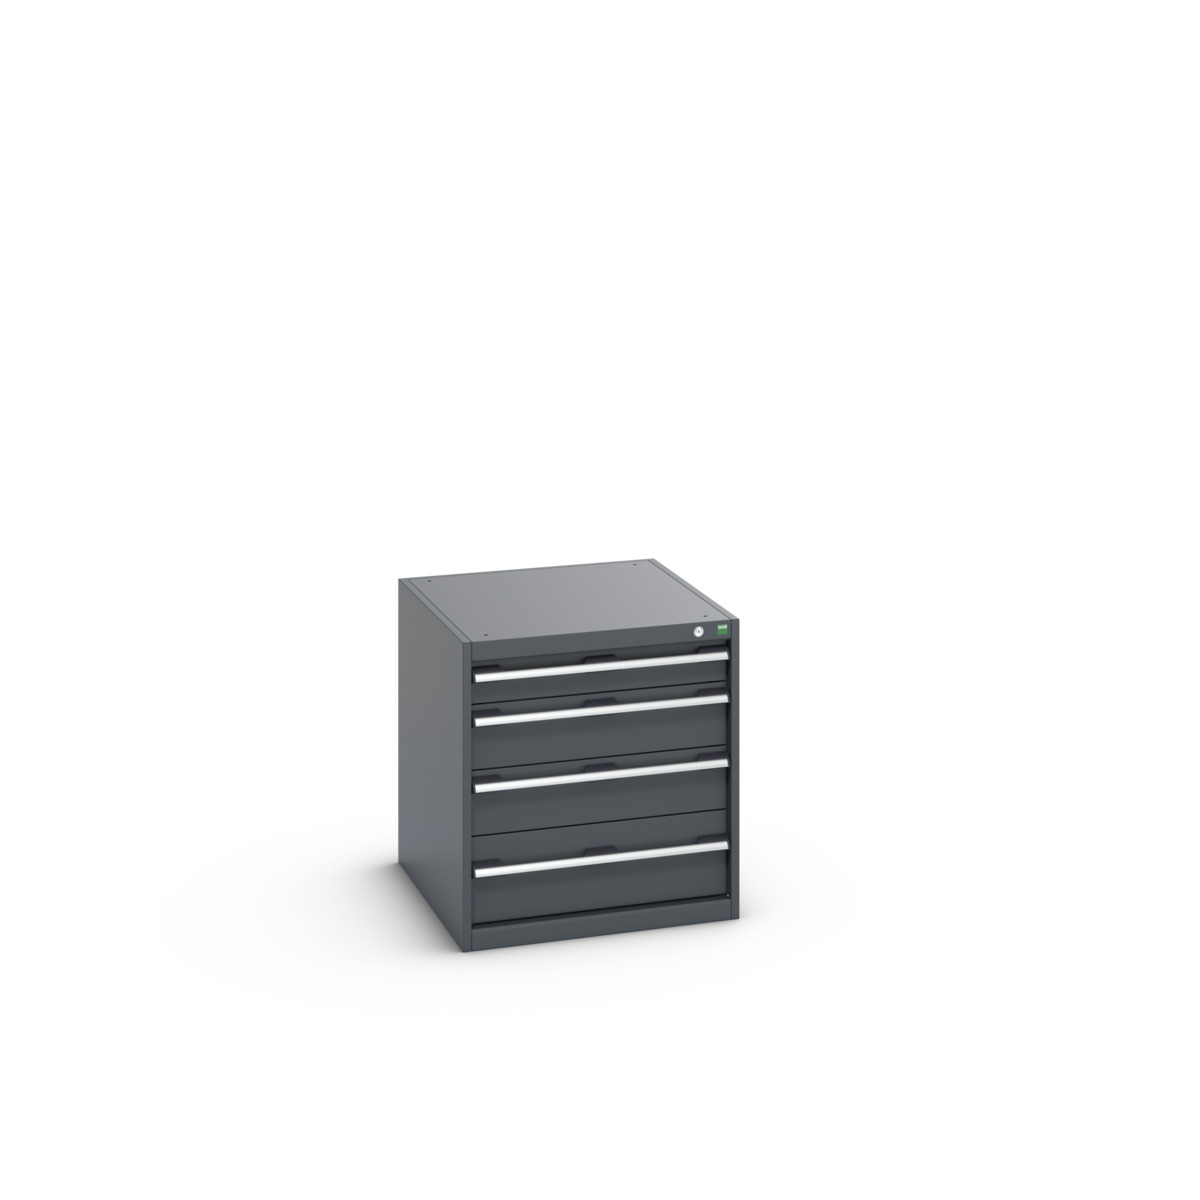 40027005.77V - cubio drawer cabinet